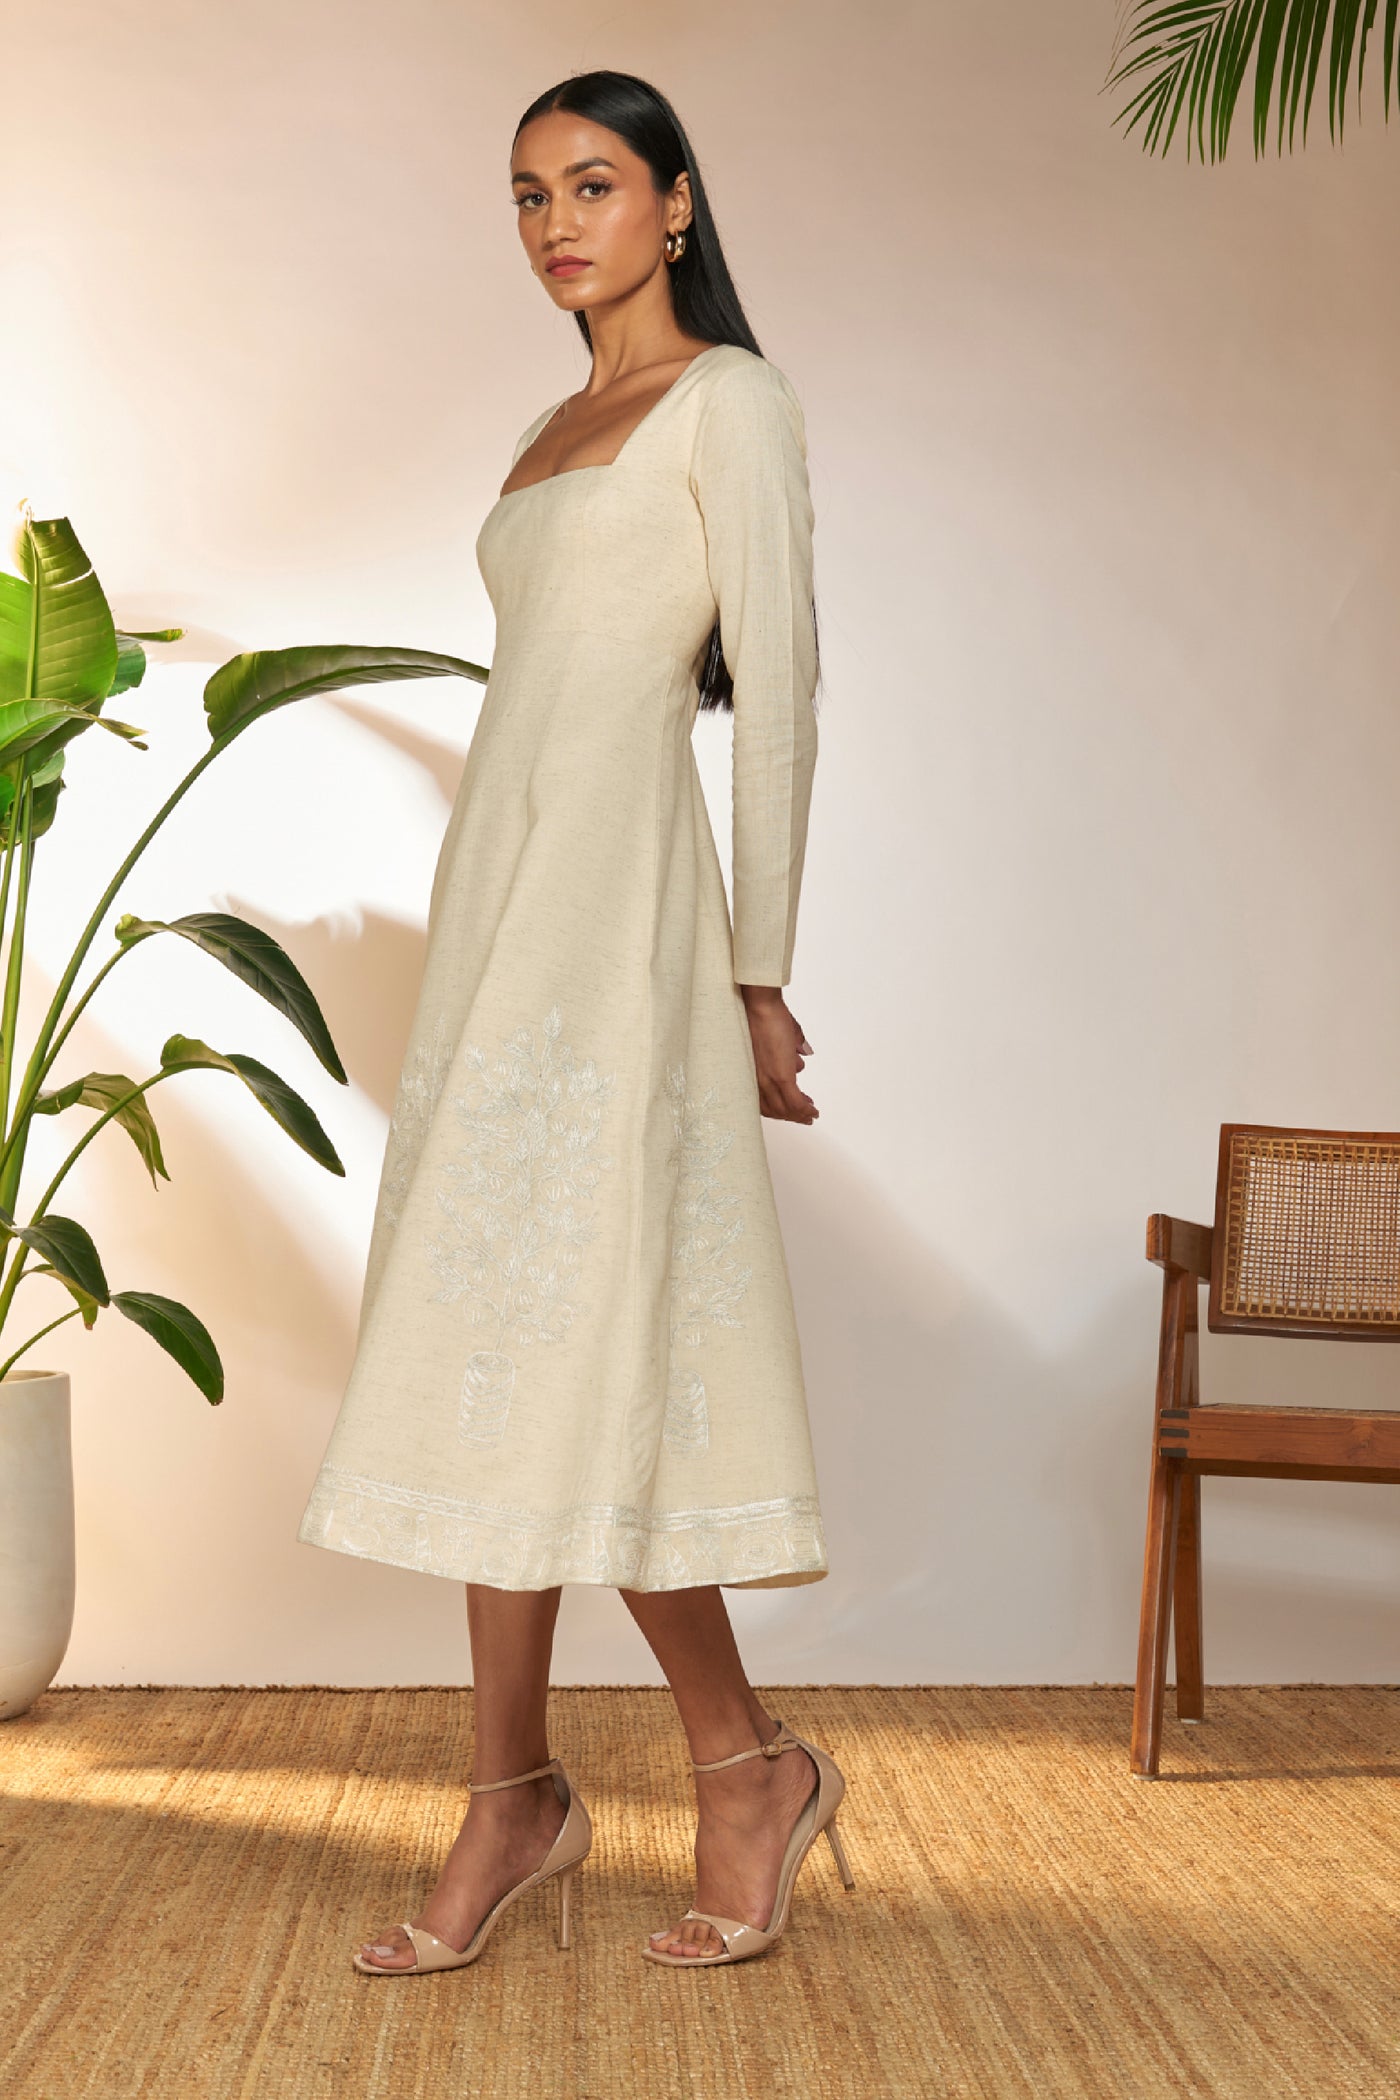 Masaba Ivory Full Sleeve Embroidered Dress indian designer wear online shopping melange singapore